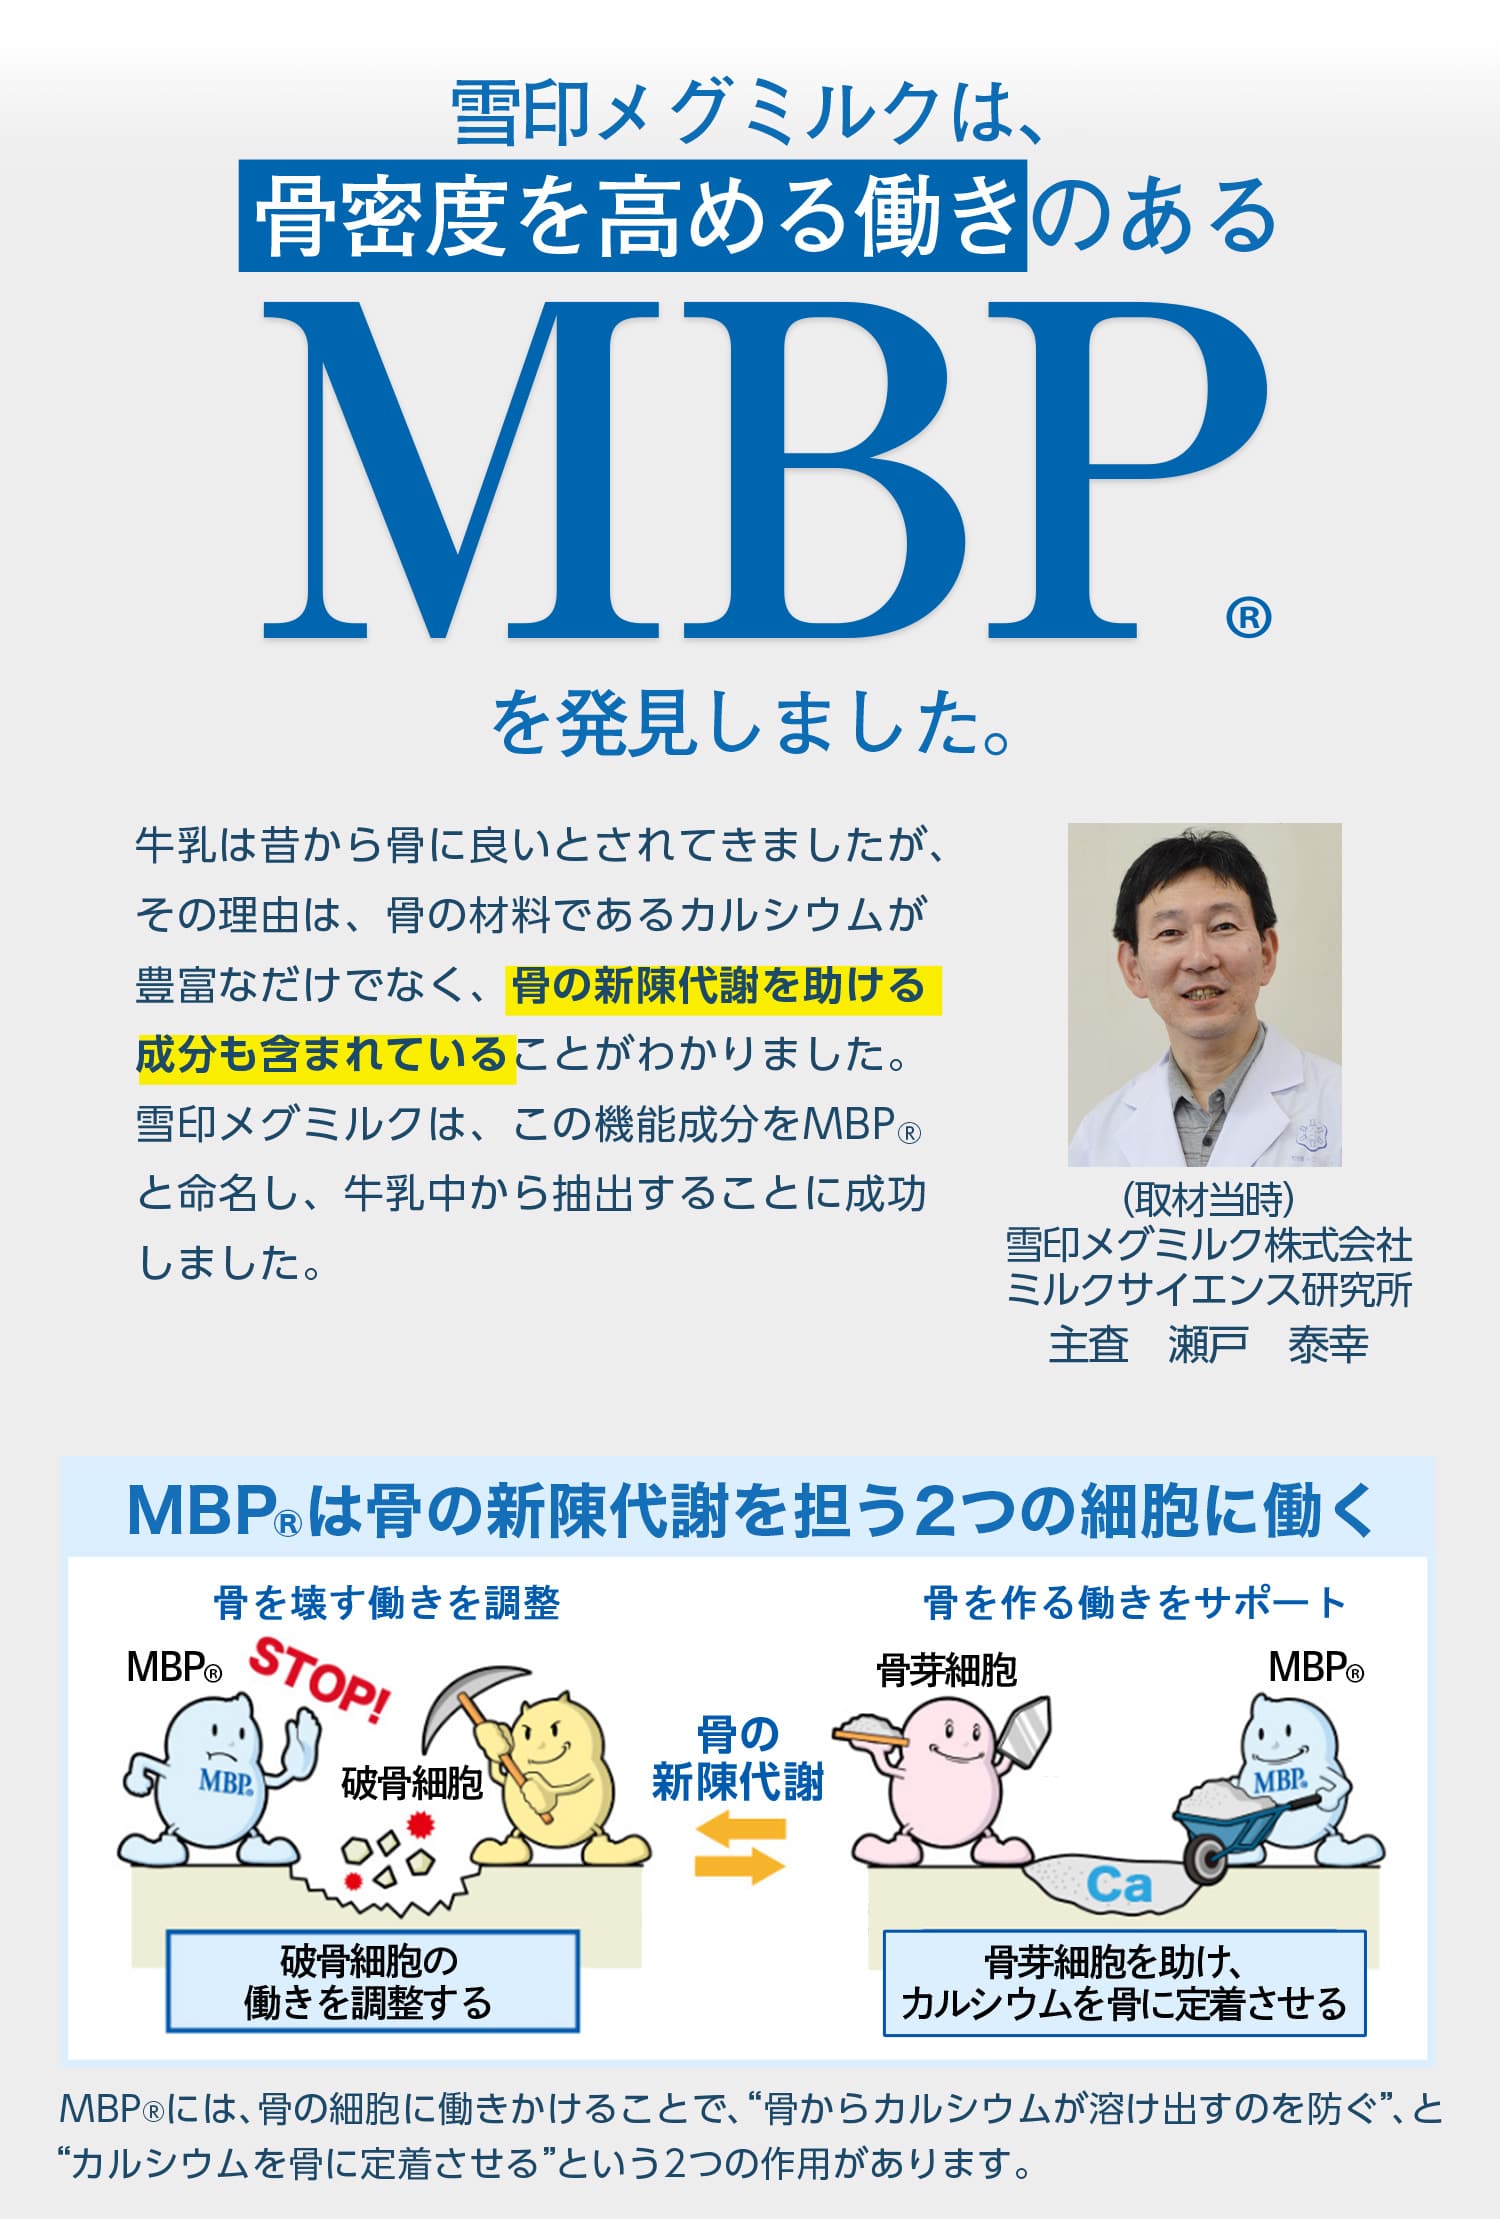 雪印メグミルクは、骨密度を高める働きのあるMBP(R)を発見しました。MBP(R)は骨の新陳代謝を促進する2つの細胞に働く